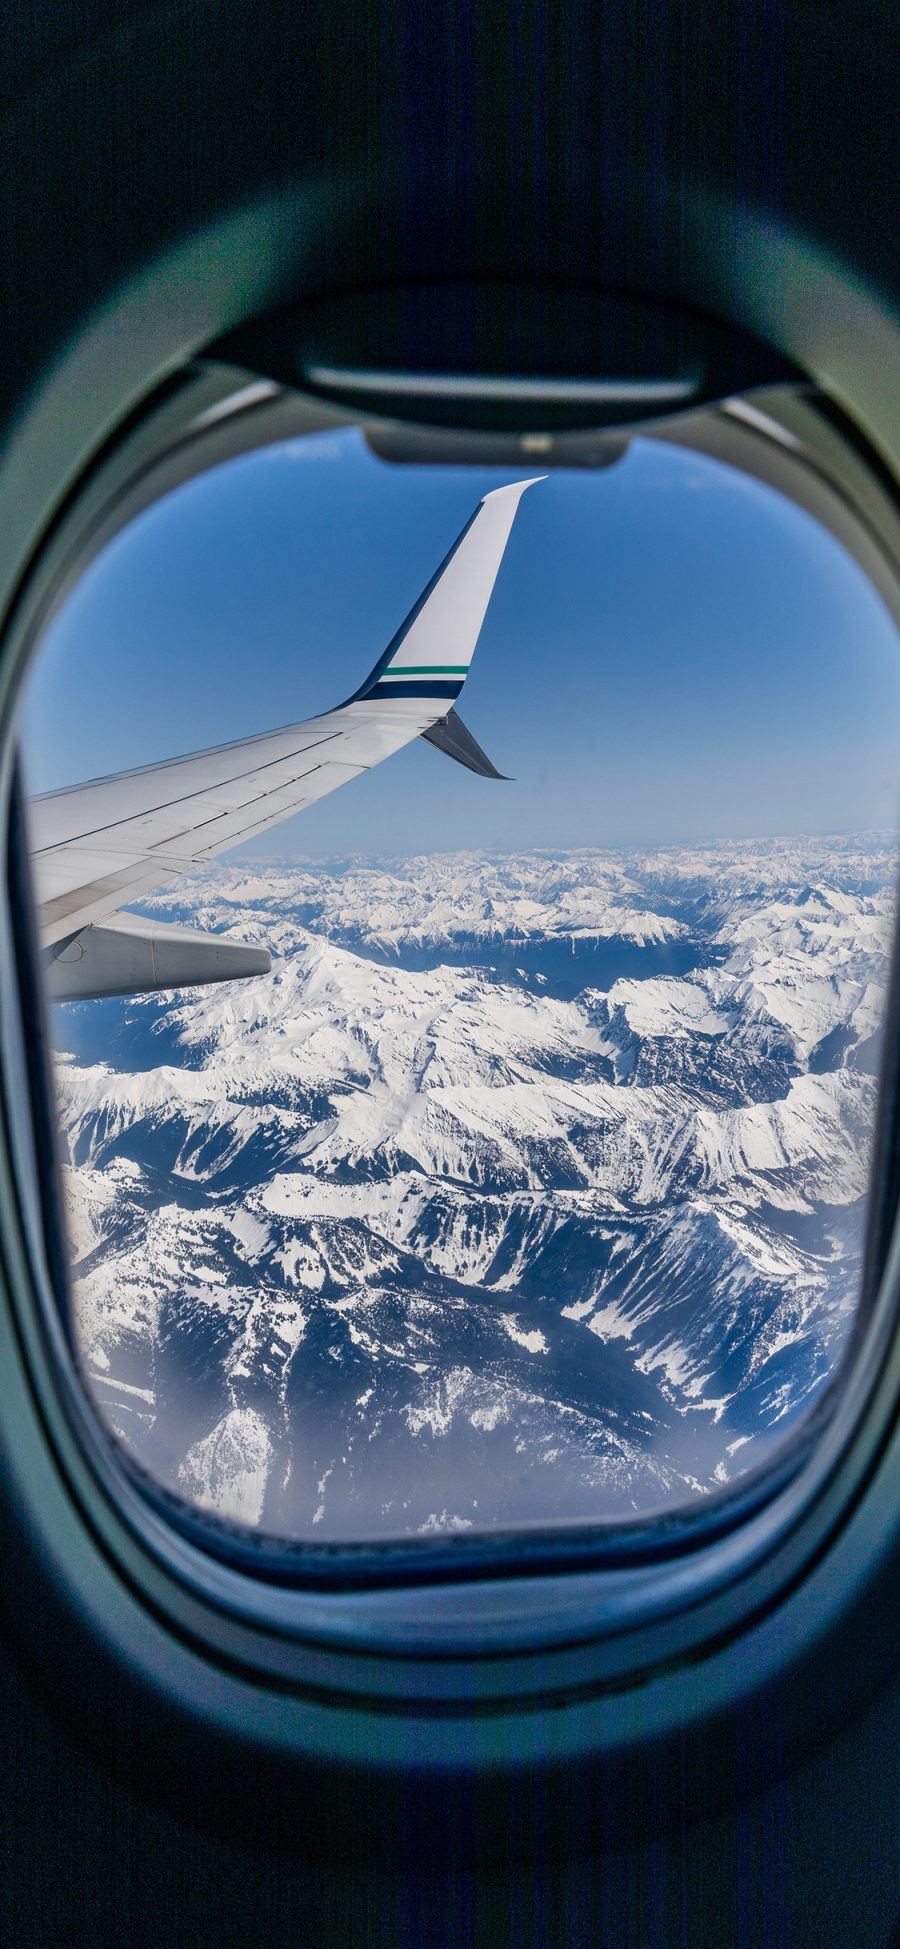 [2436×1125]飞机 窗户 机尾 冰川 苹果手机壁纸图片